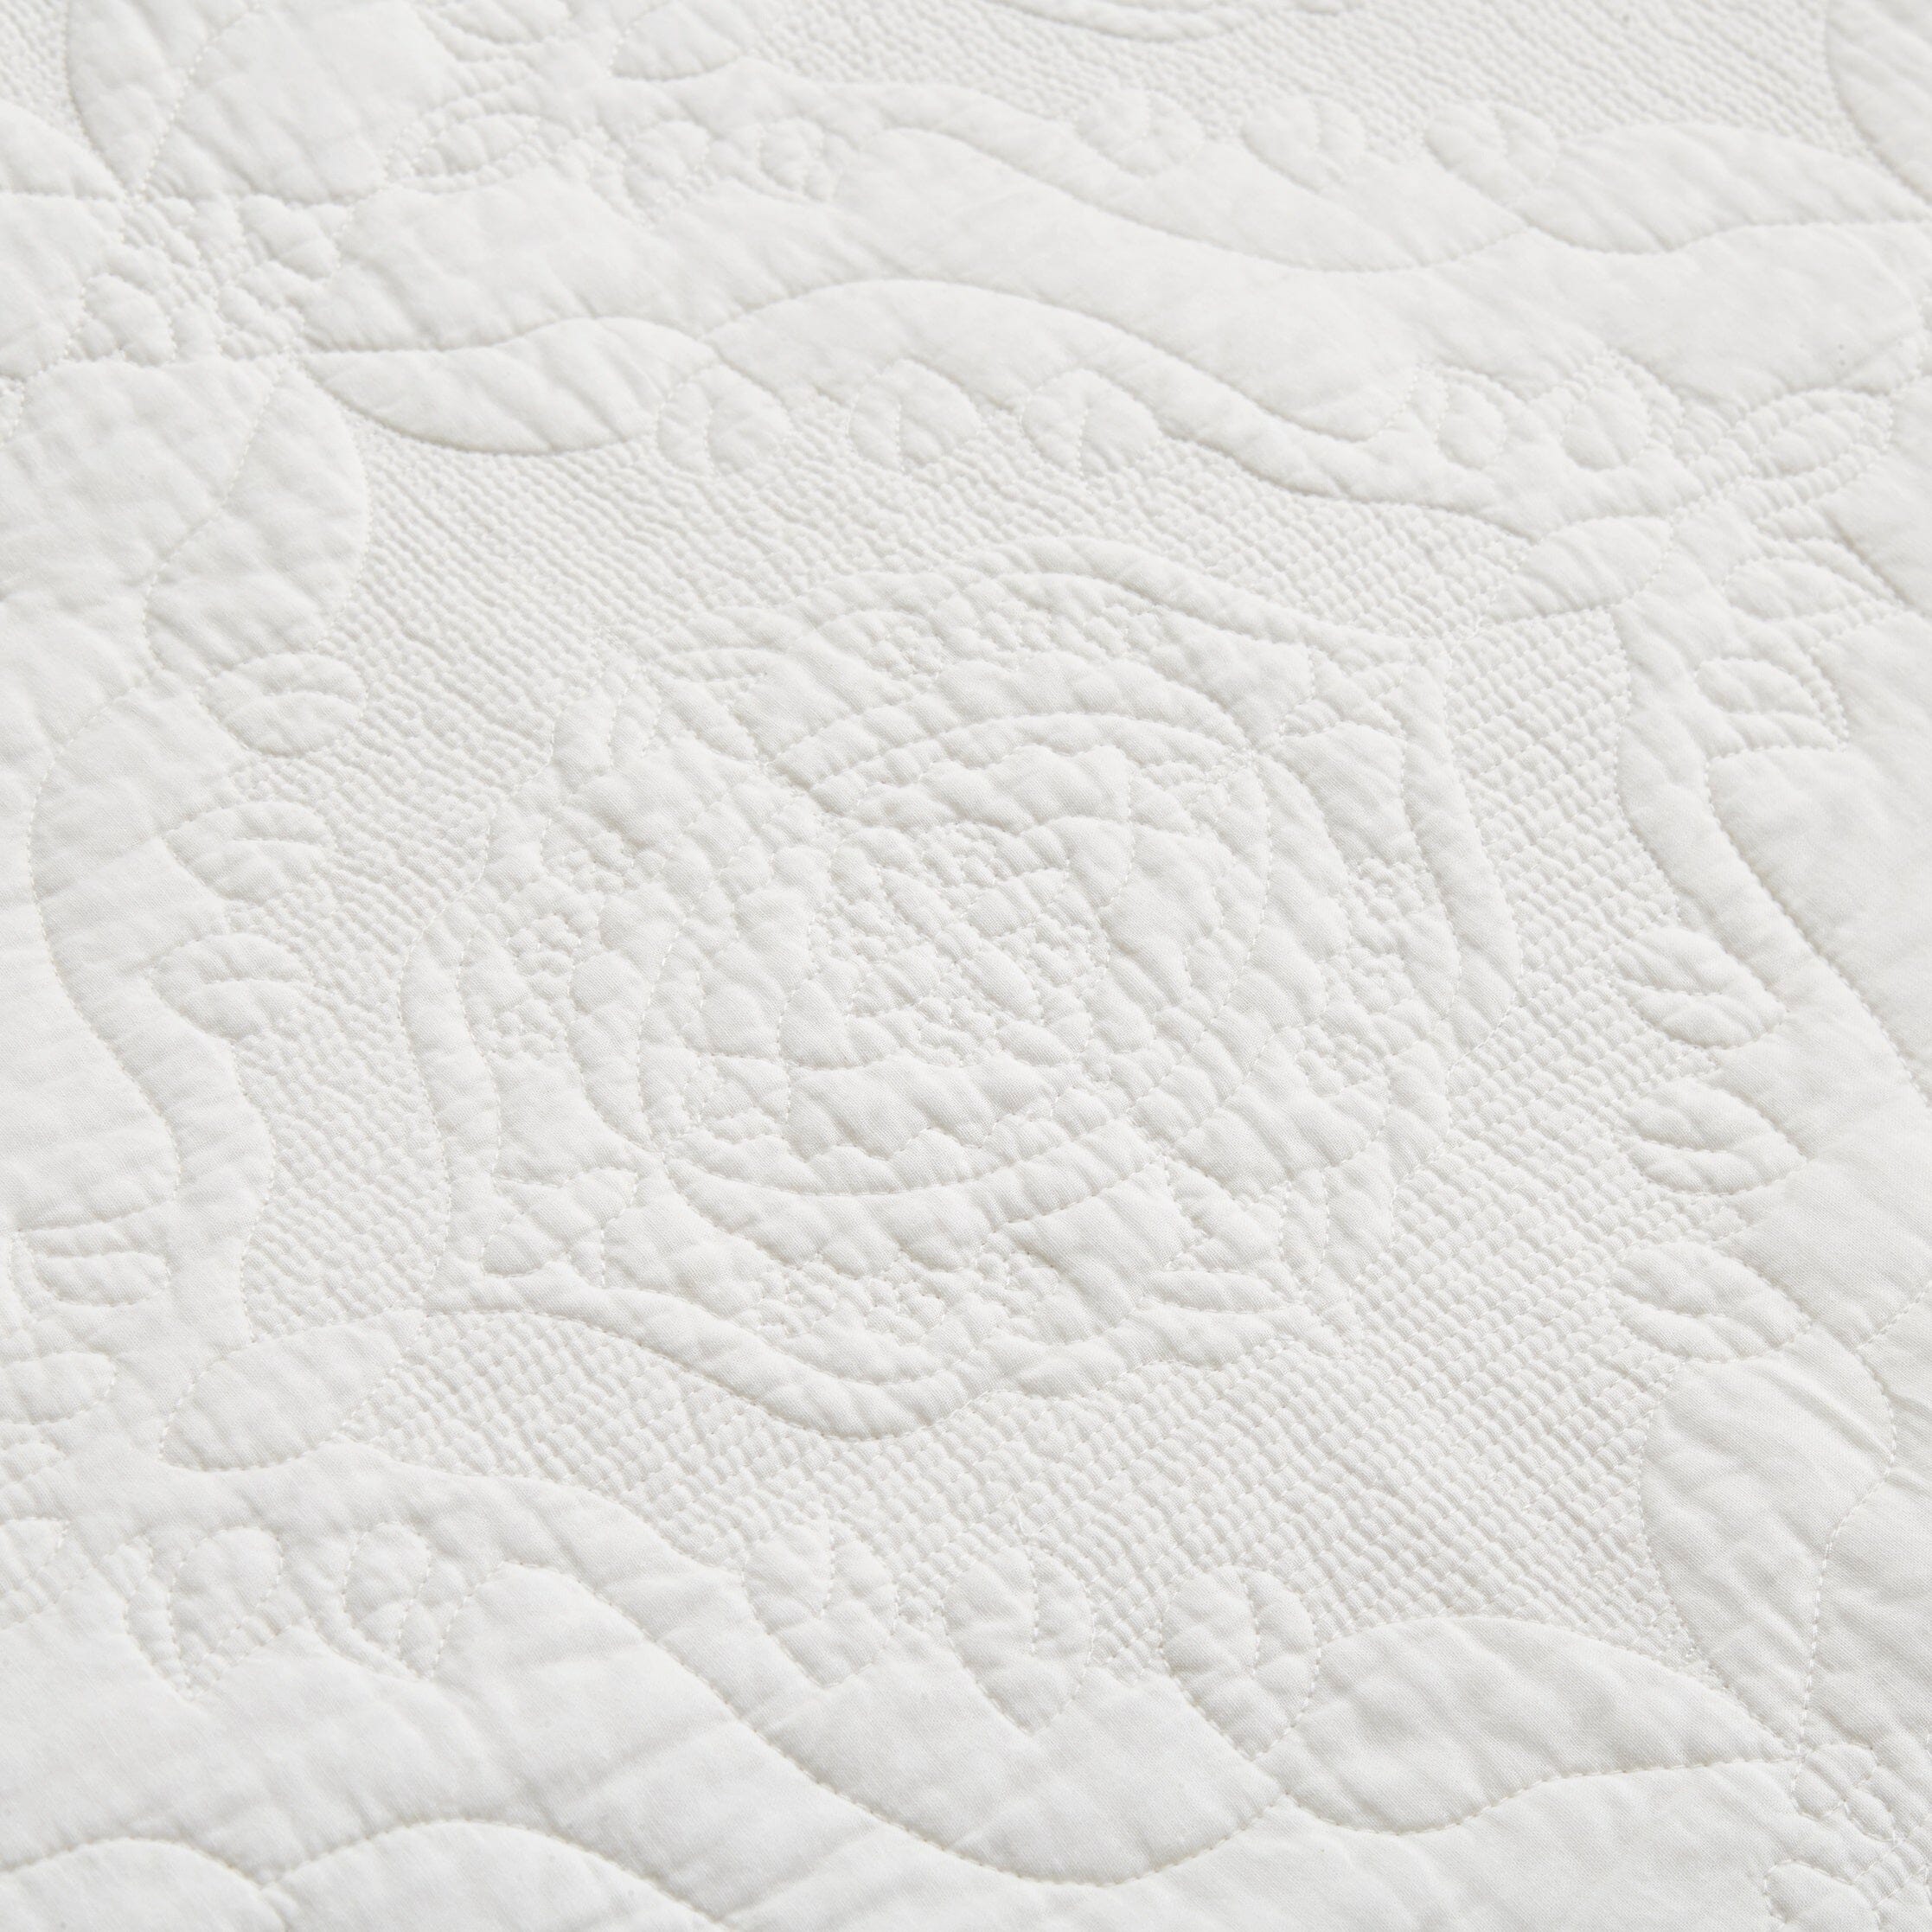 Tache Vanilla Cream Ivory Paisley Damask Stitch Matelassé Cotton Quilt Set (JHW-643) - Tache Home Fashion